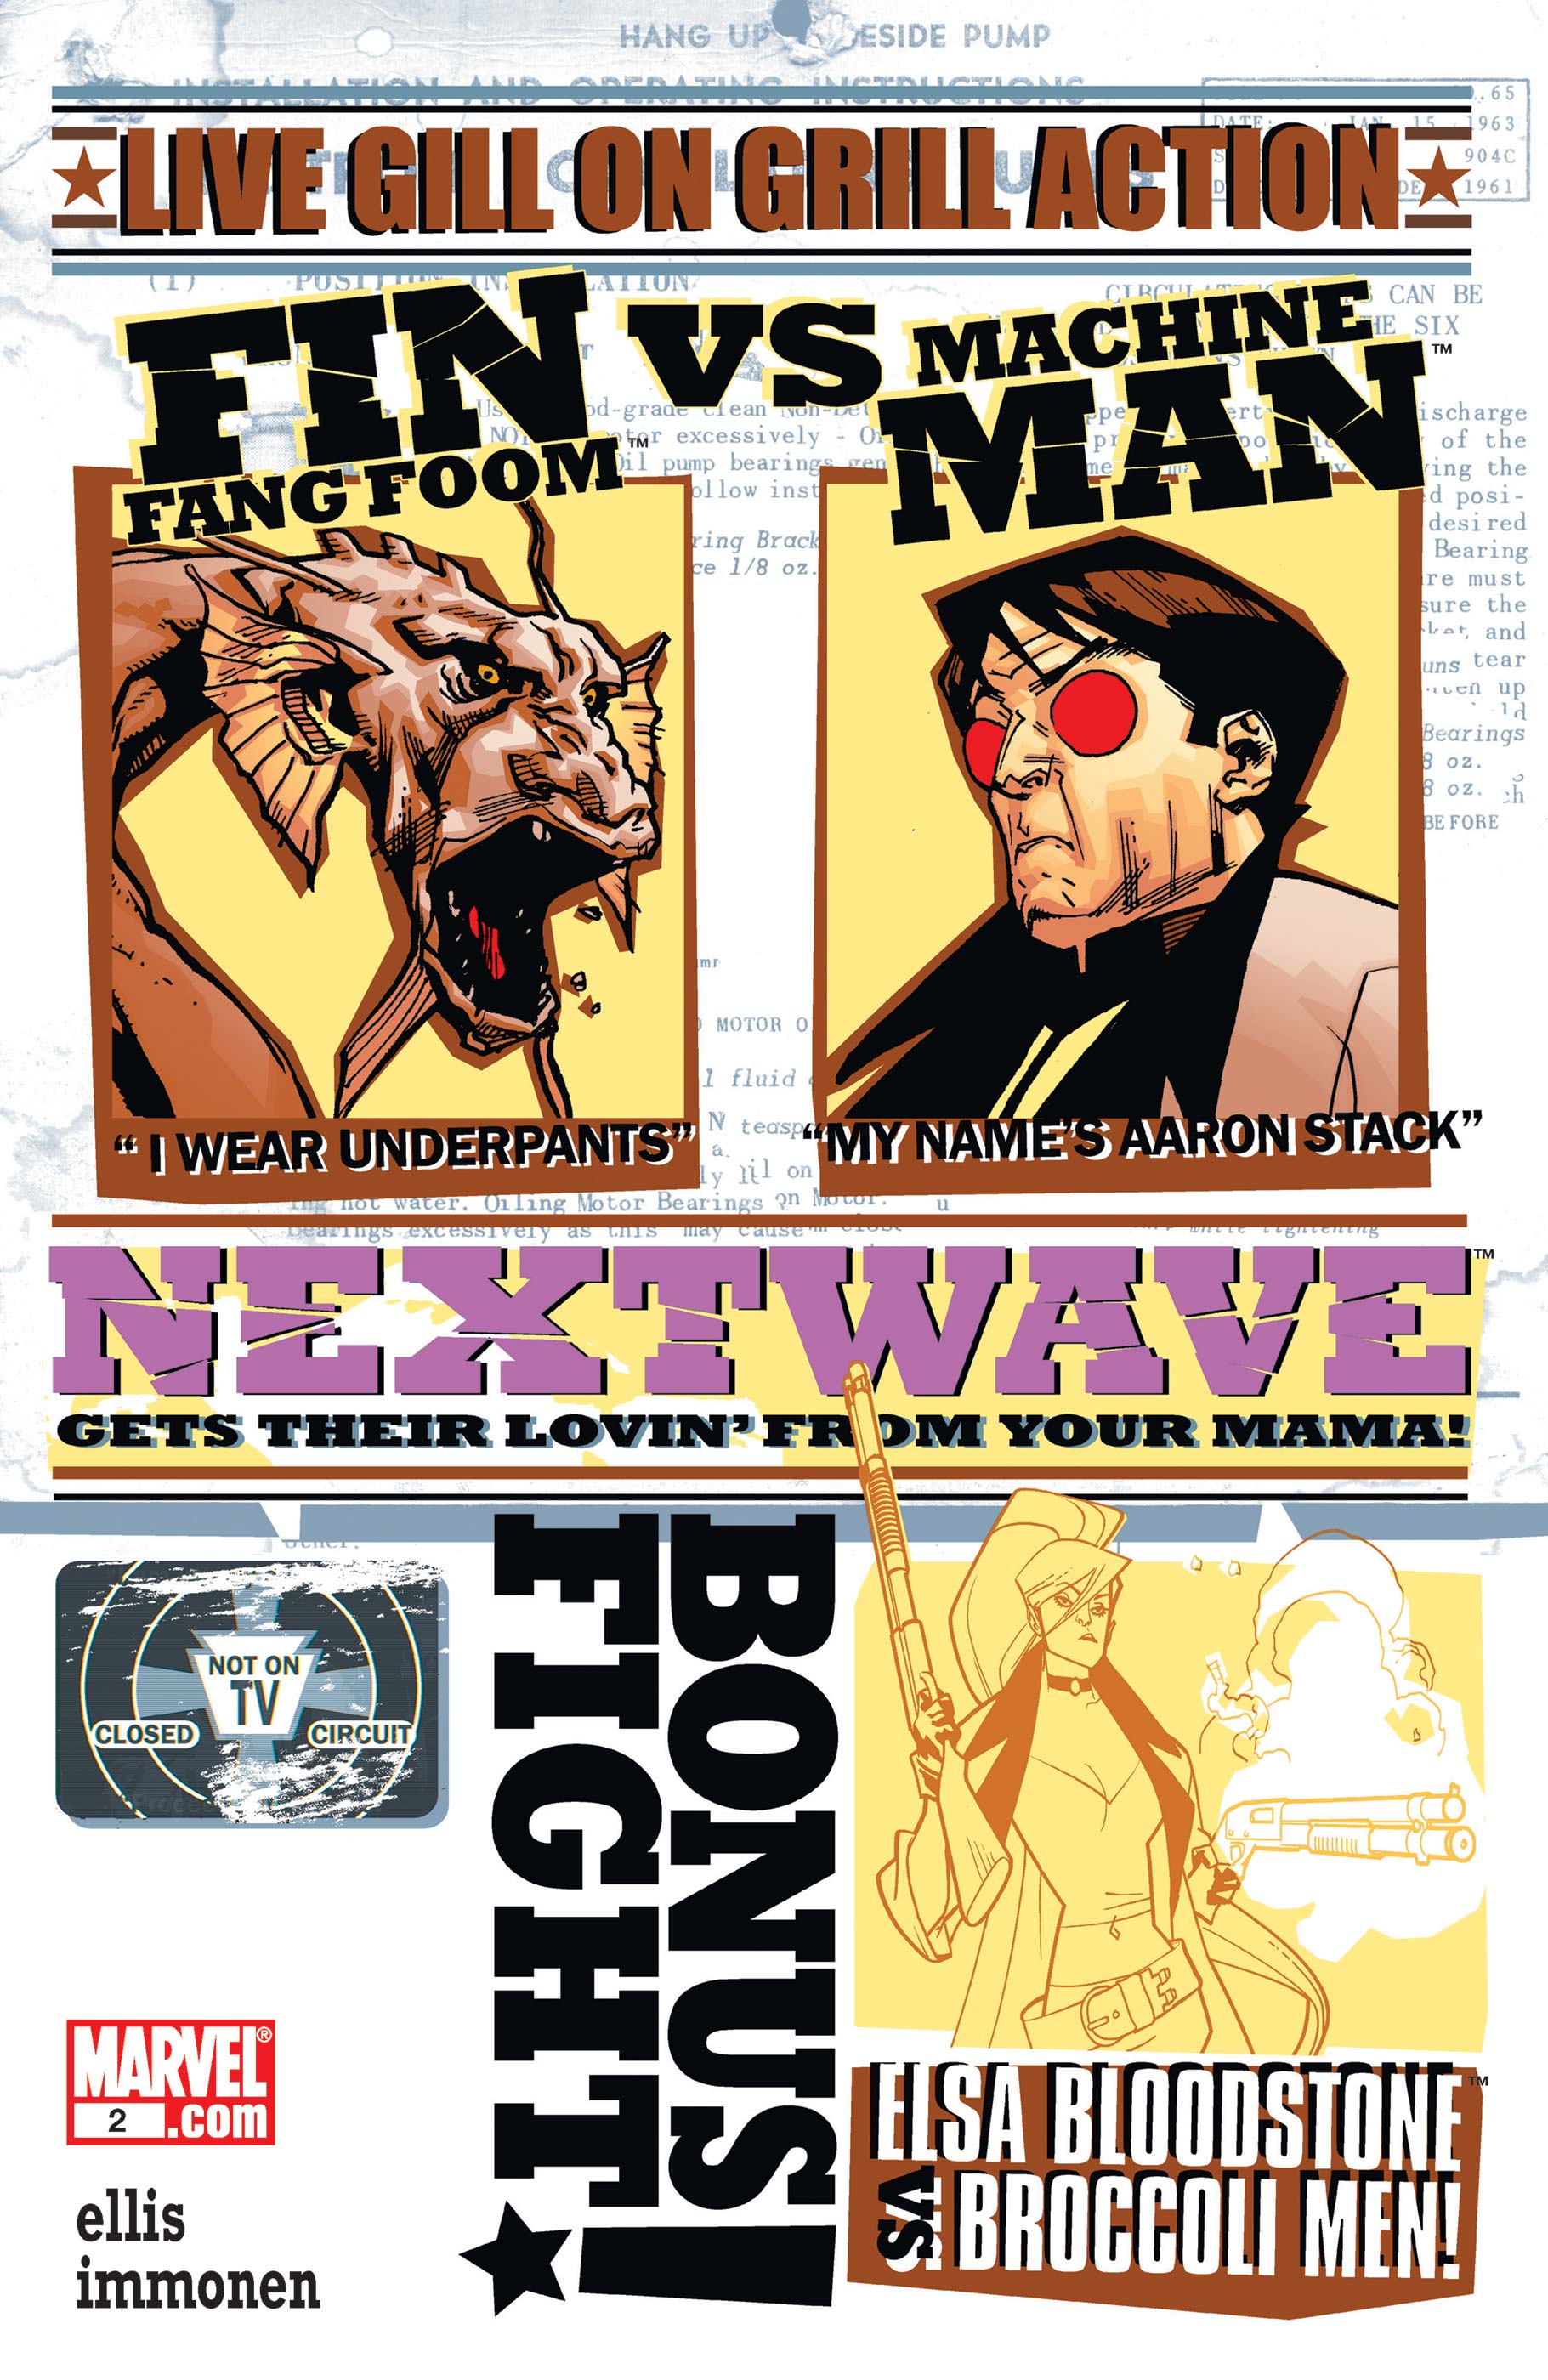 Nextwave: Agents of H.a.T.E. (2006) #2